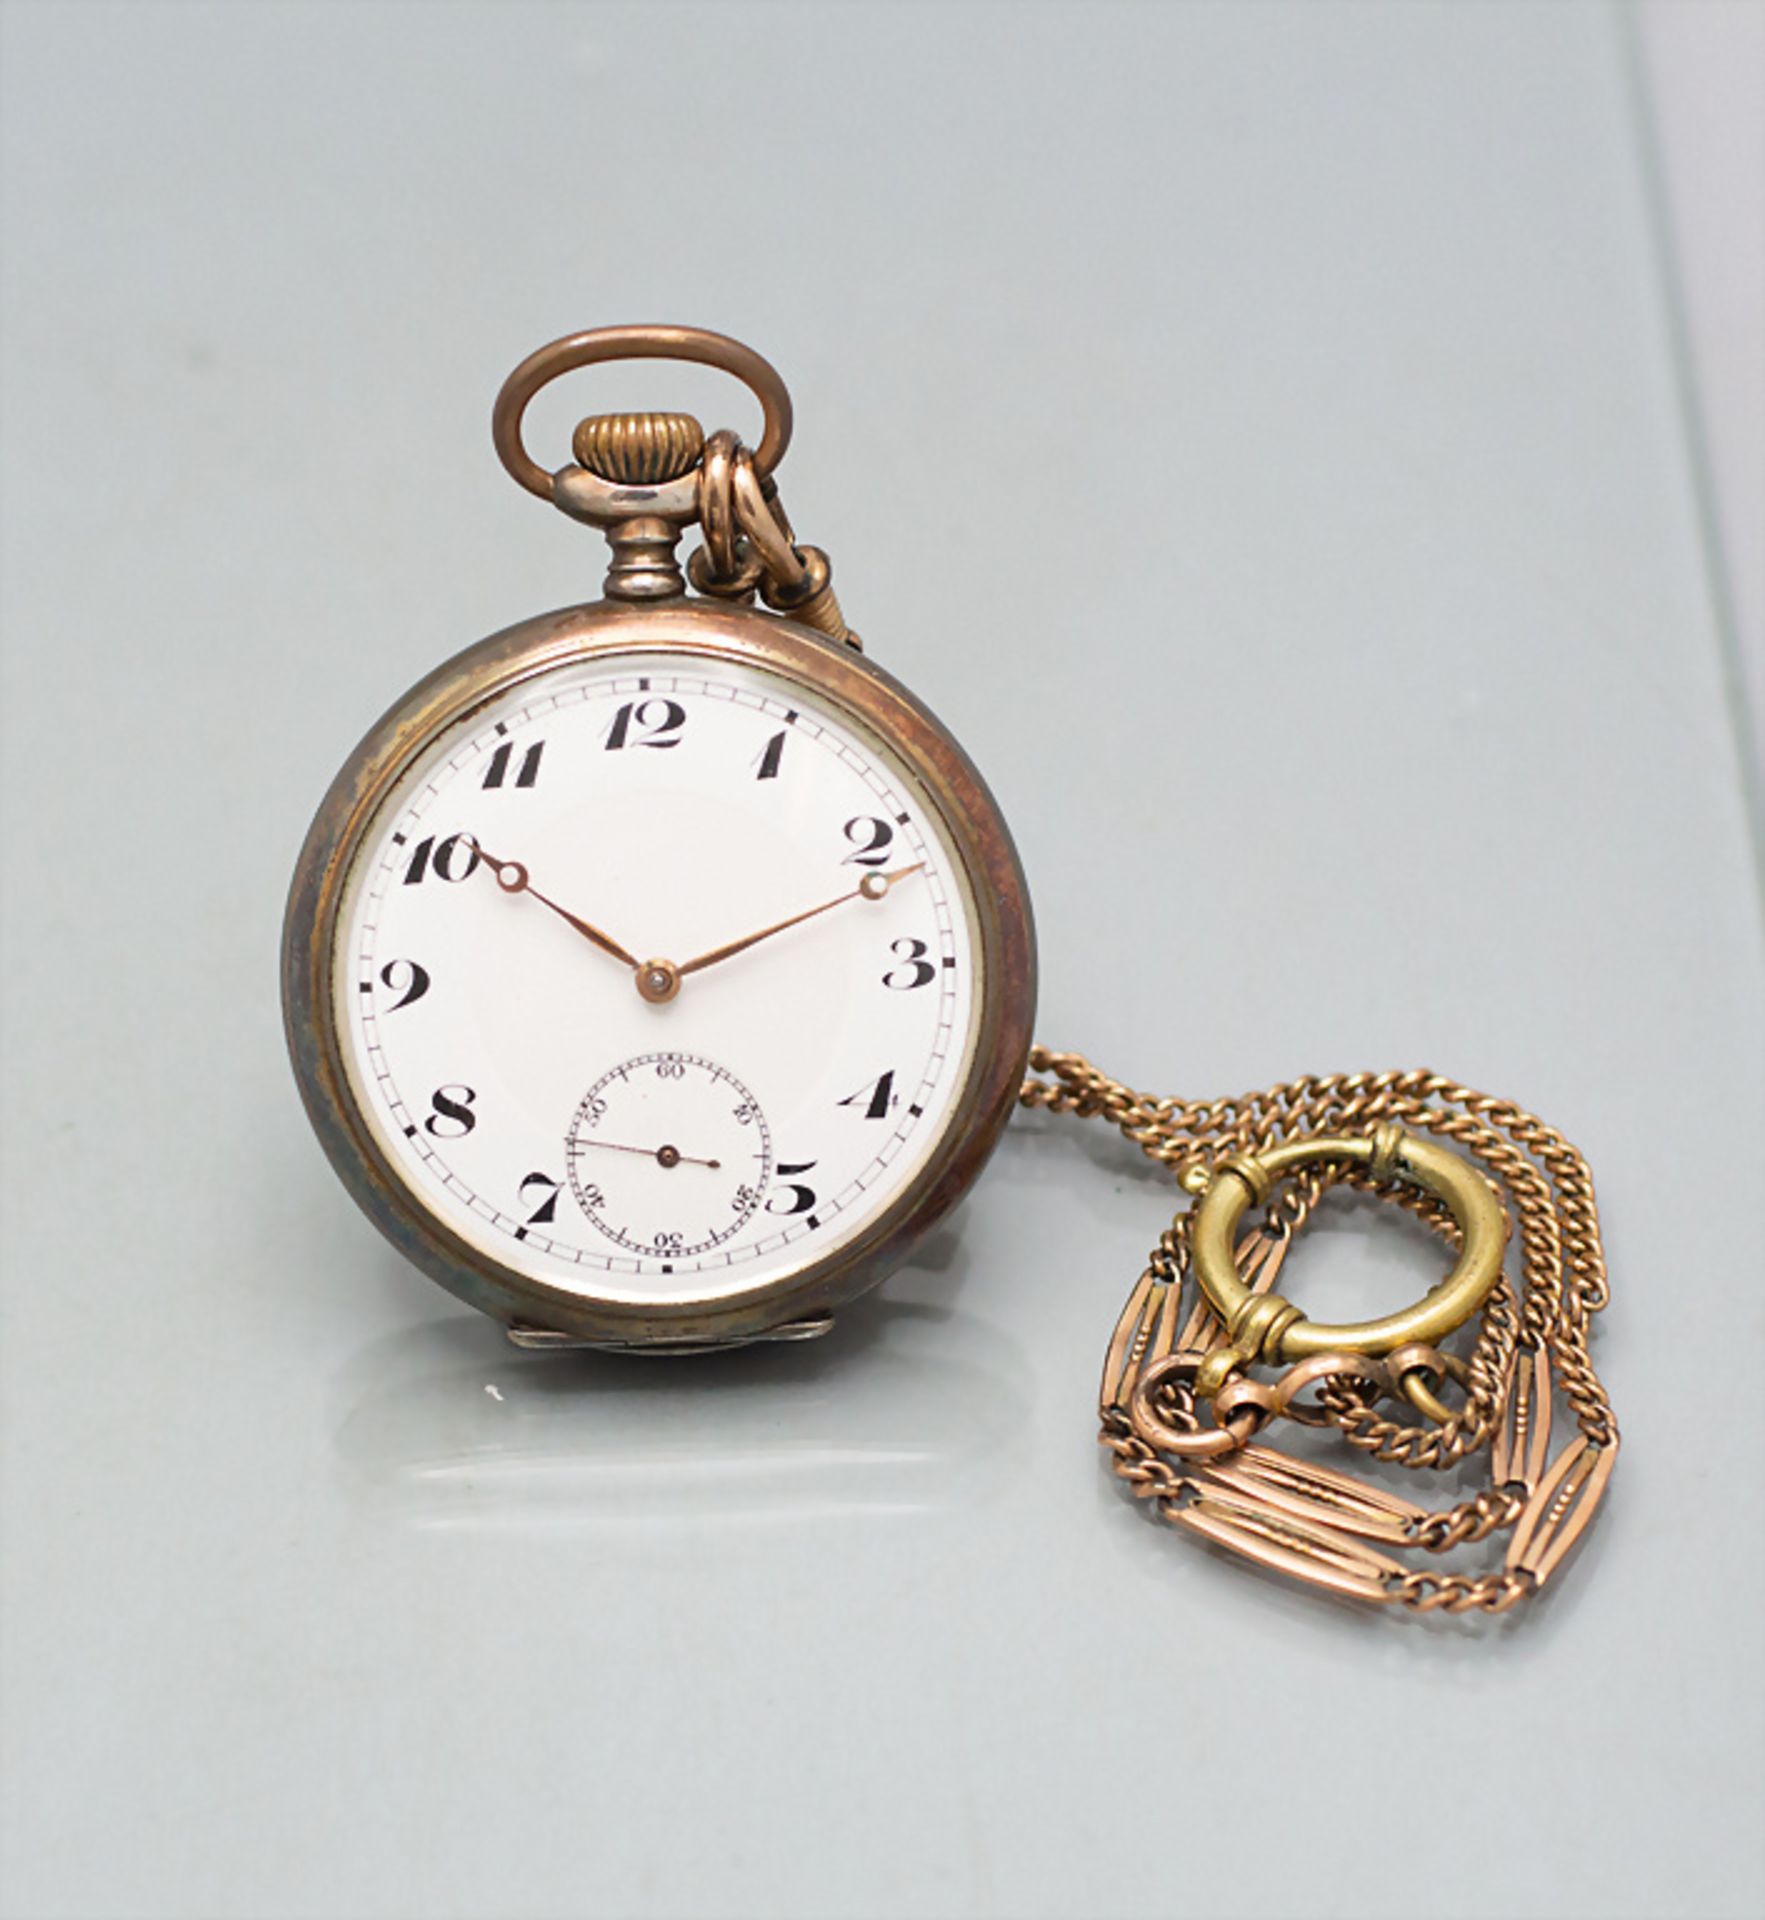 Taschenuhr mit Kette / A pocket watch with chain, Junghans, um 1910 - Bild 2 aus 7